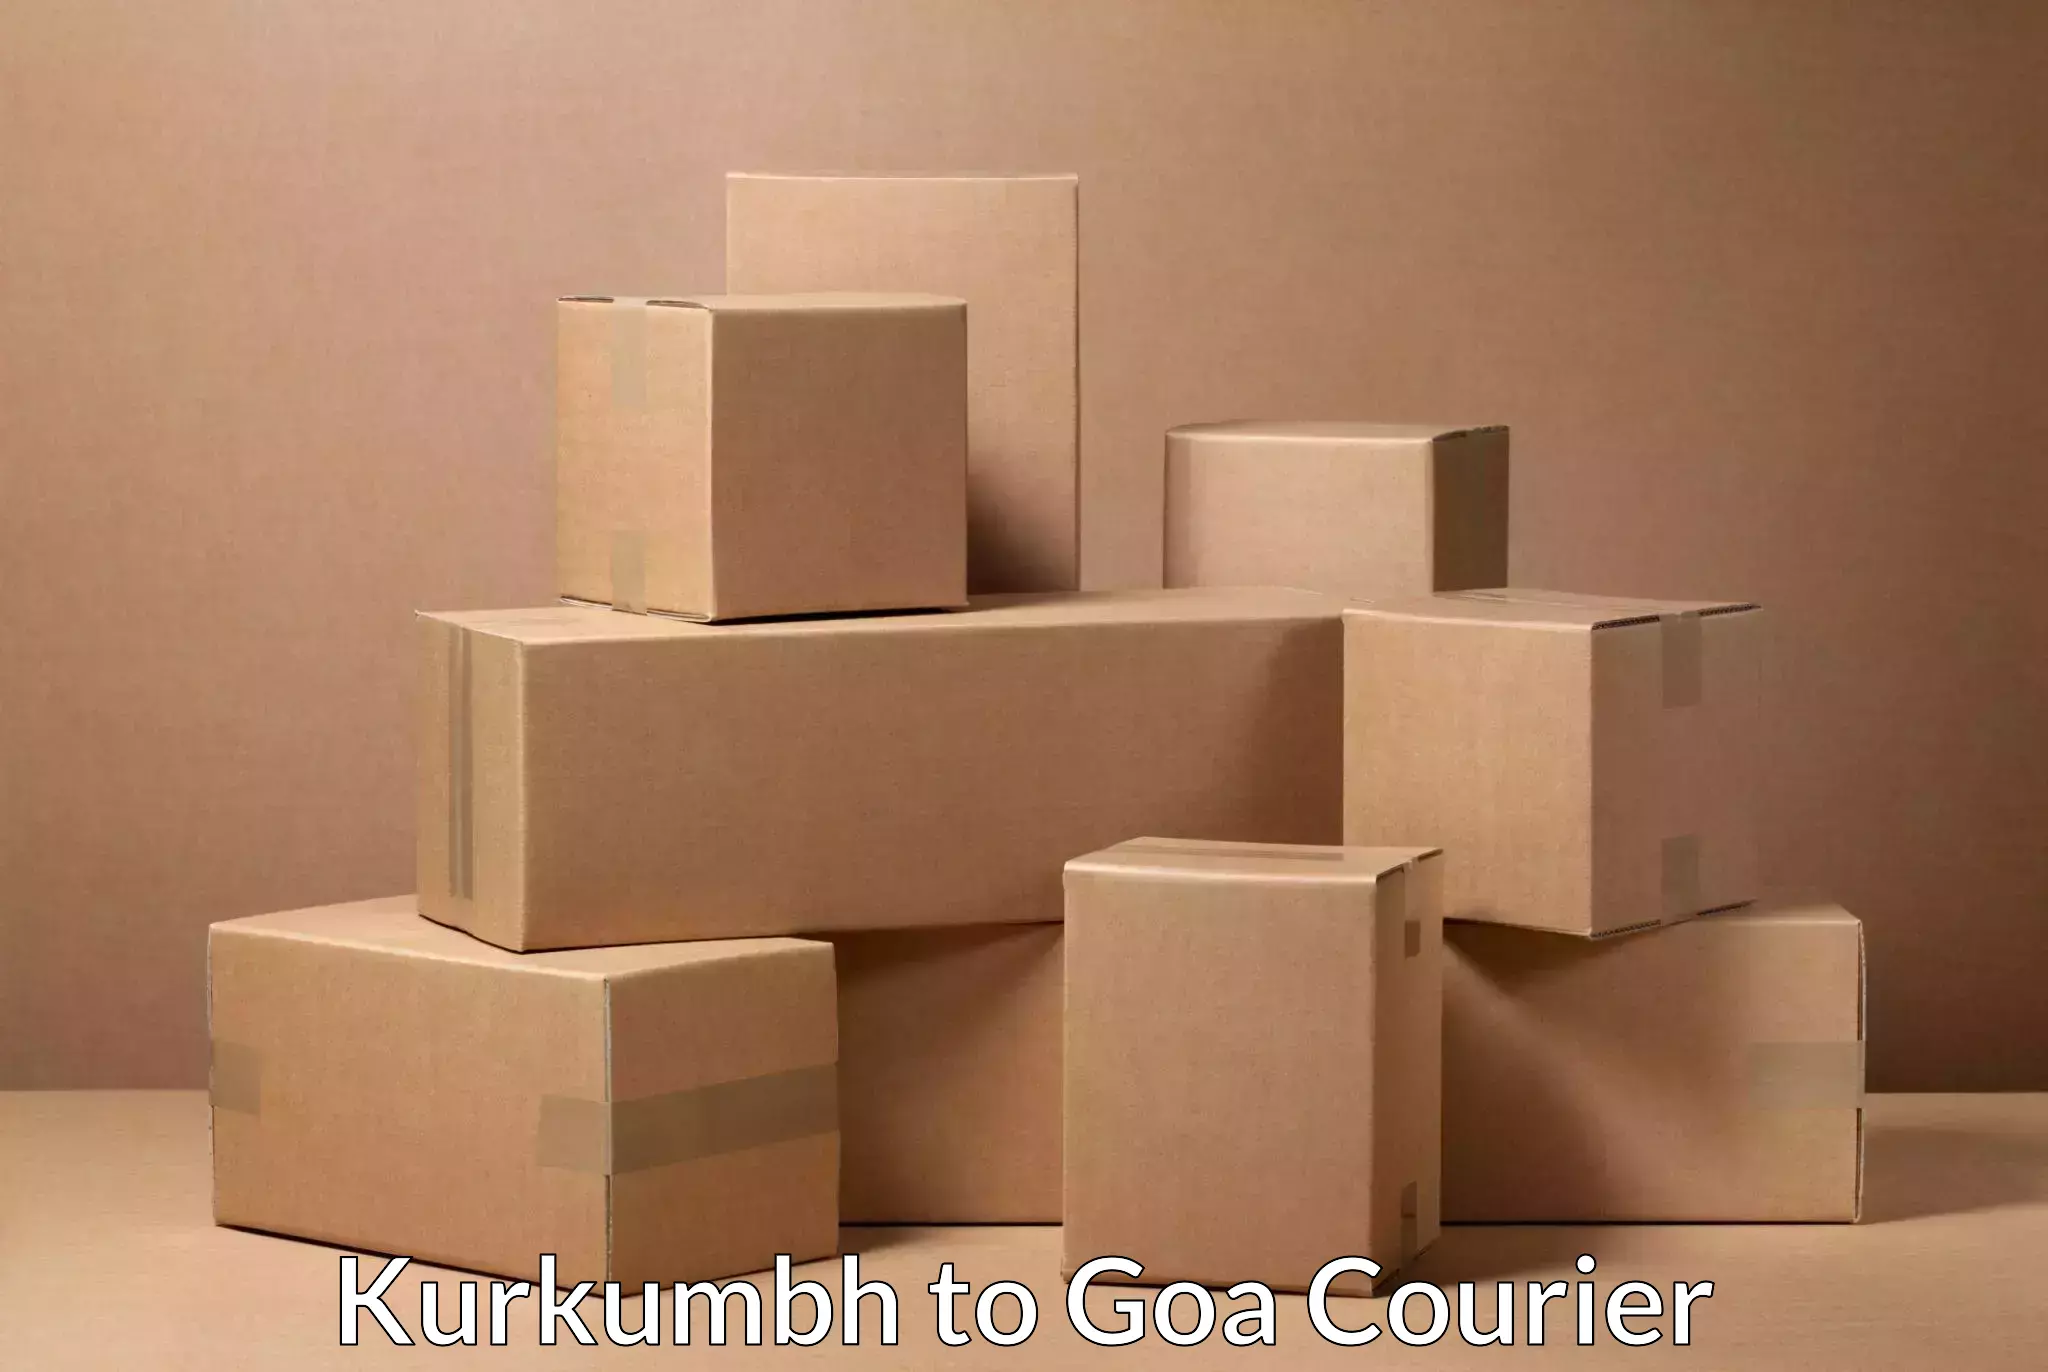 Premium courier solutions Kurkumbh to Goa